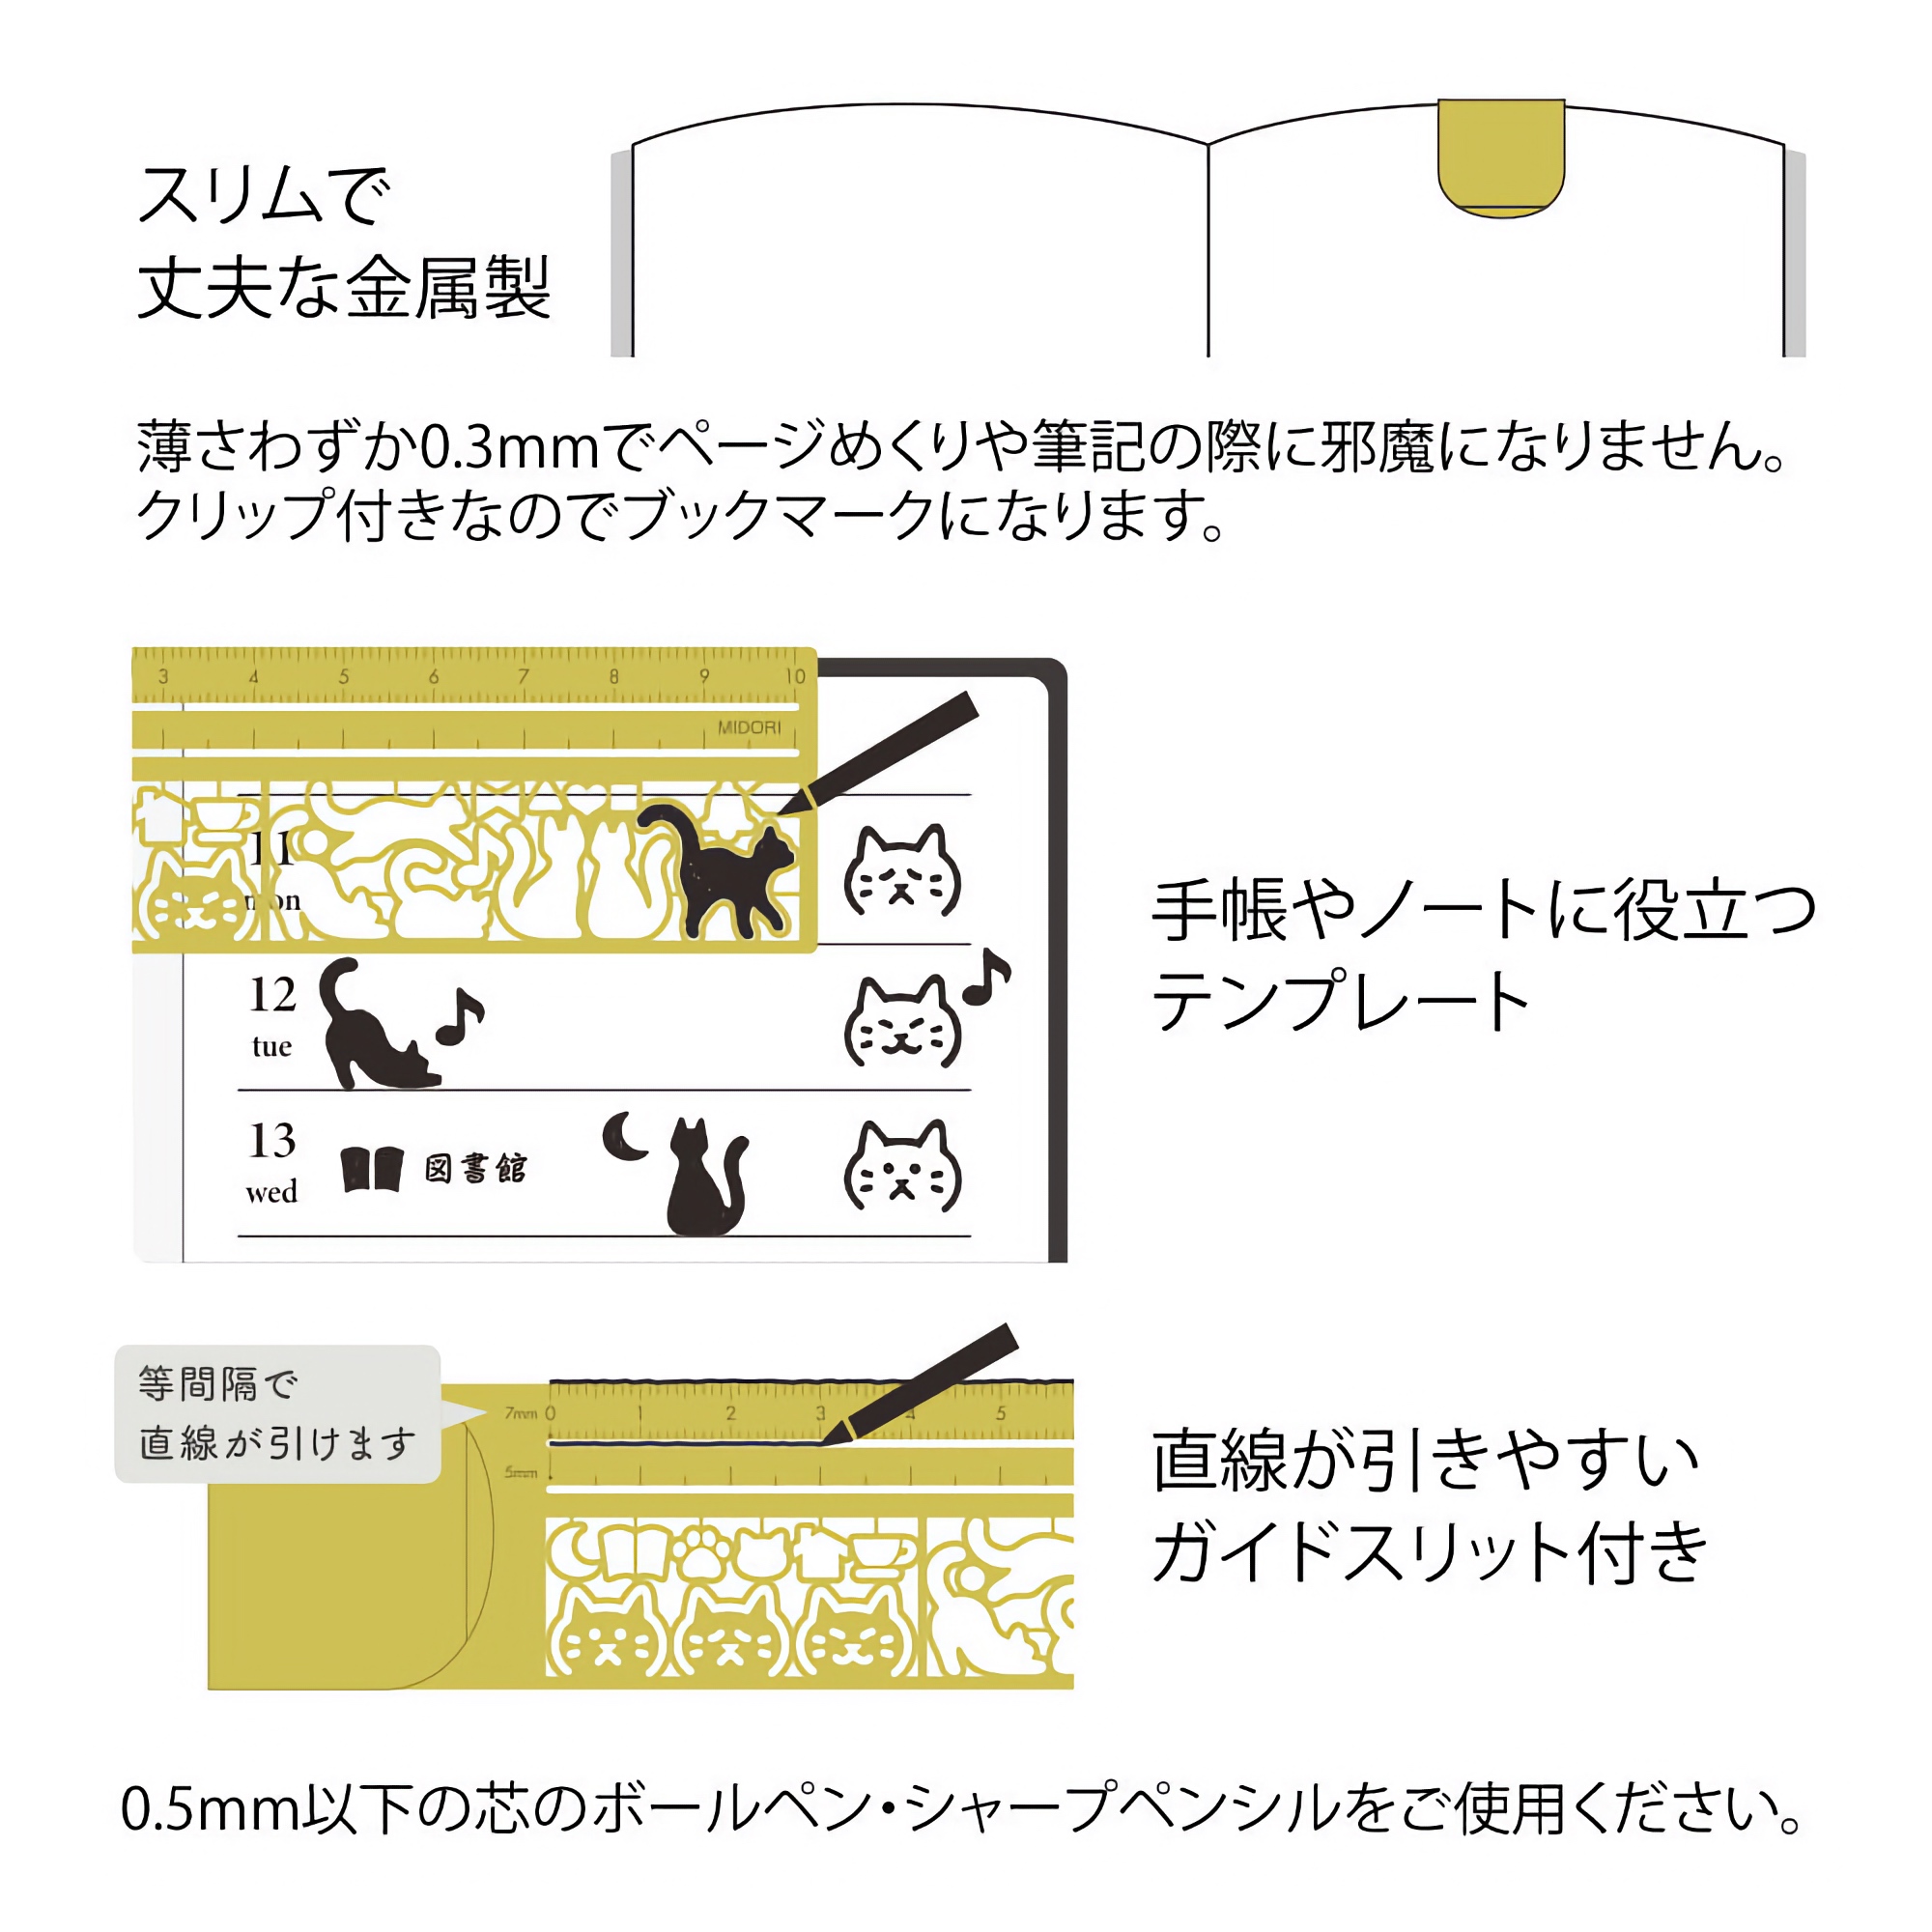 Midori Clip Ruler Cat Brass